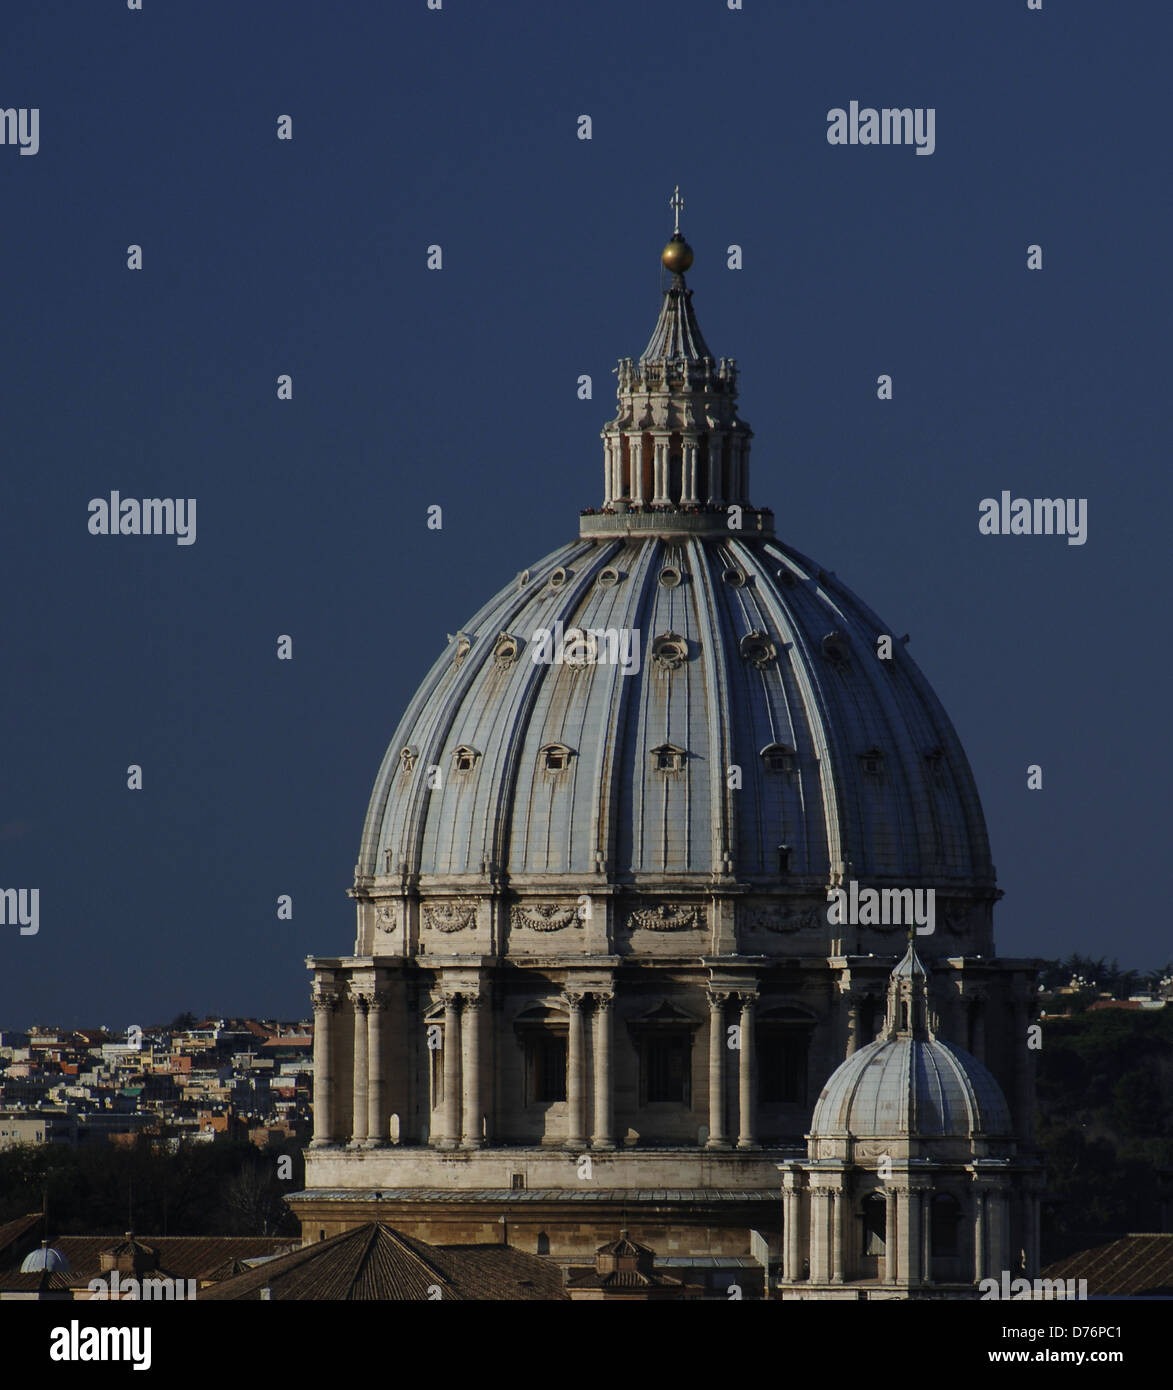 Città del Vaticano. Cupola della Basilica di San Pietro, costruita da Michelangelo (1475-1564). Il XVI secolo. Esterno. Foto Stock